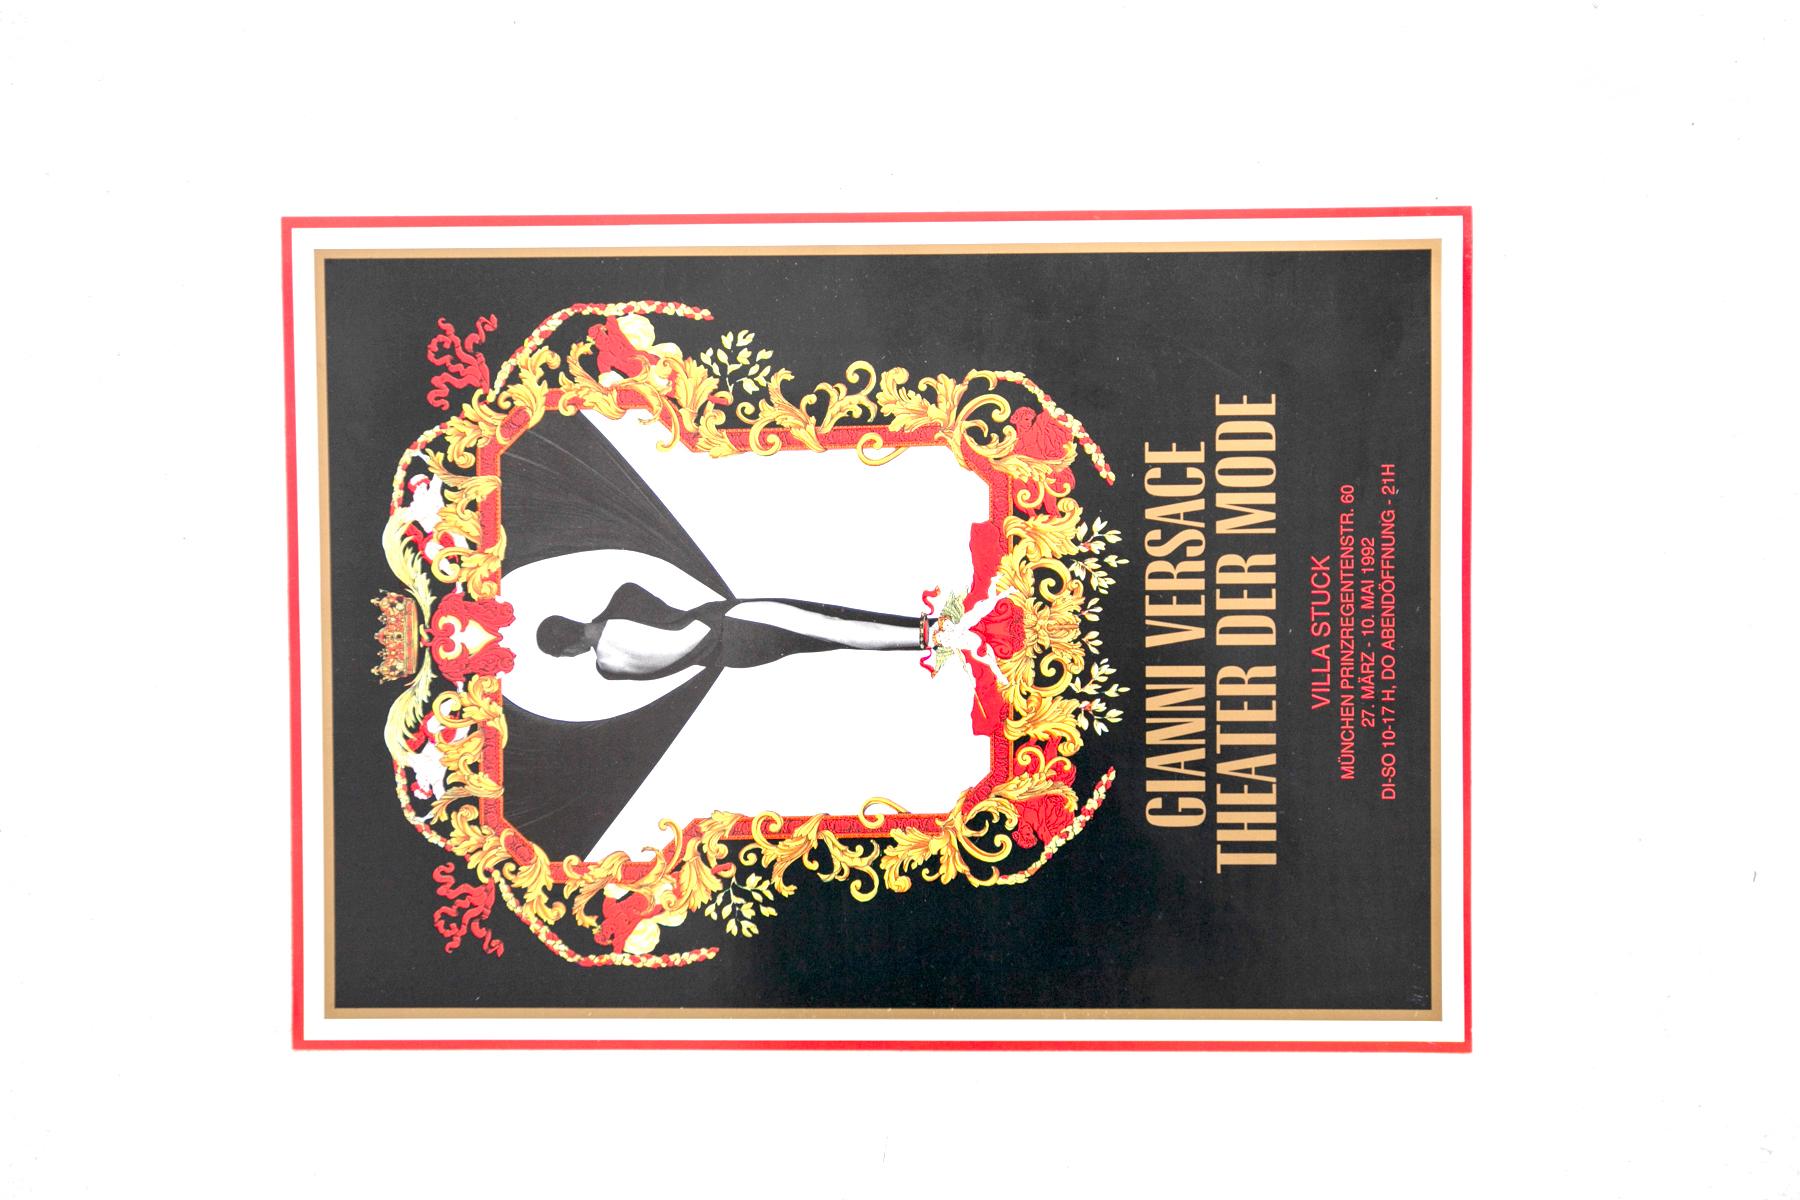 Plakat von Gianni Versace für die Eröffnung der Ausstellung 